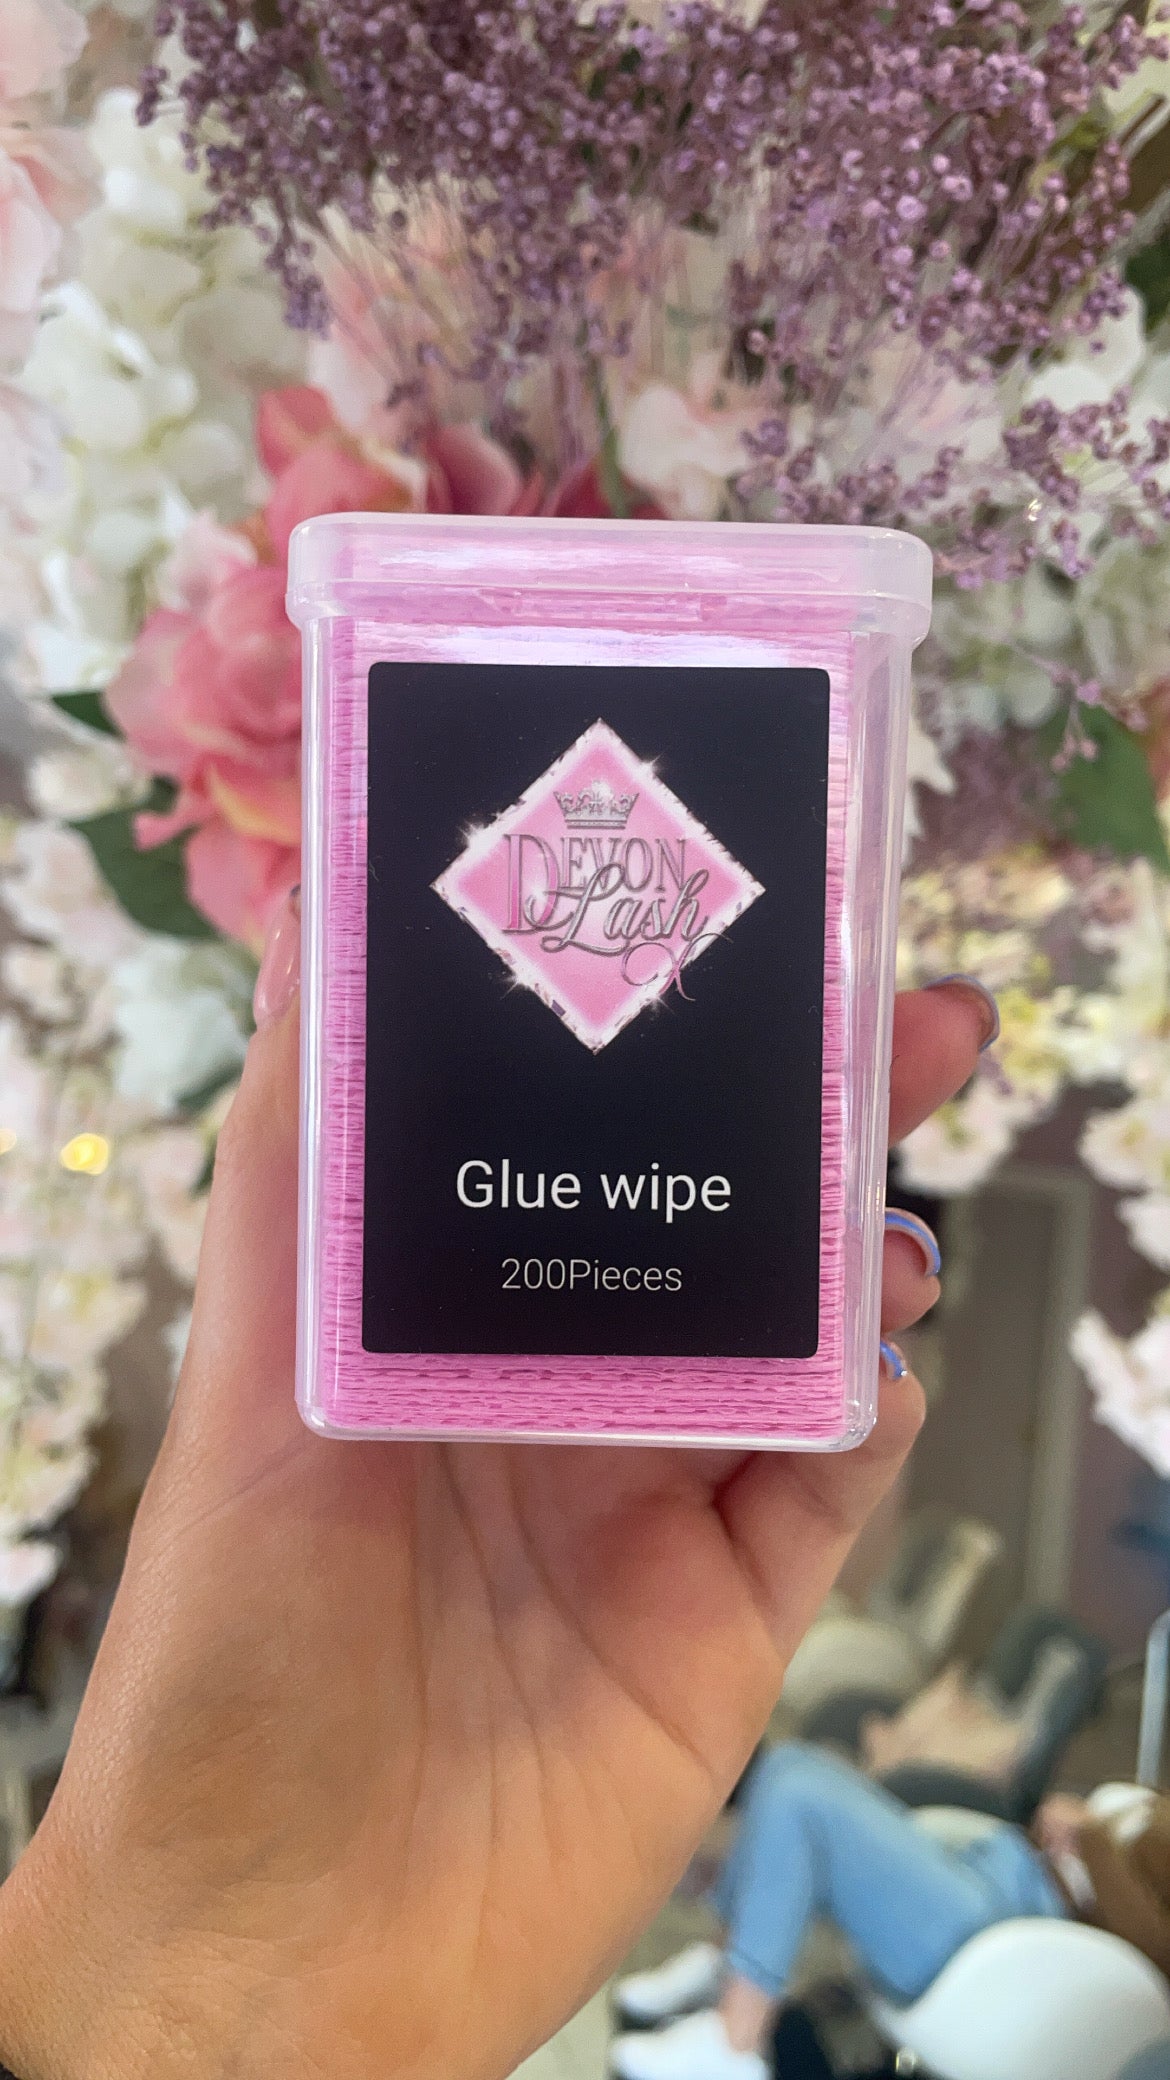 Glue wipes